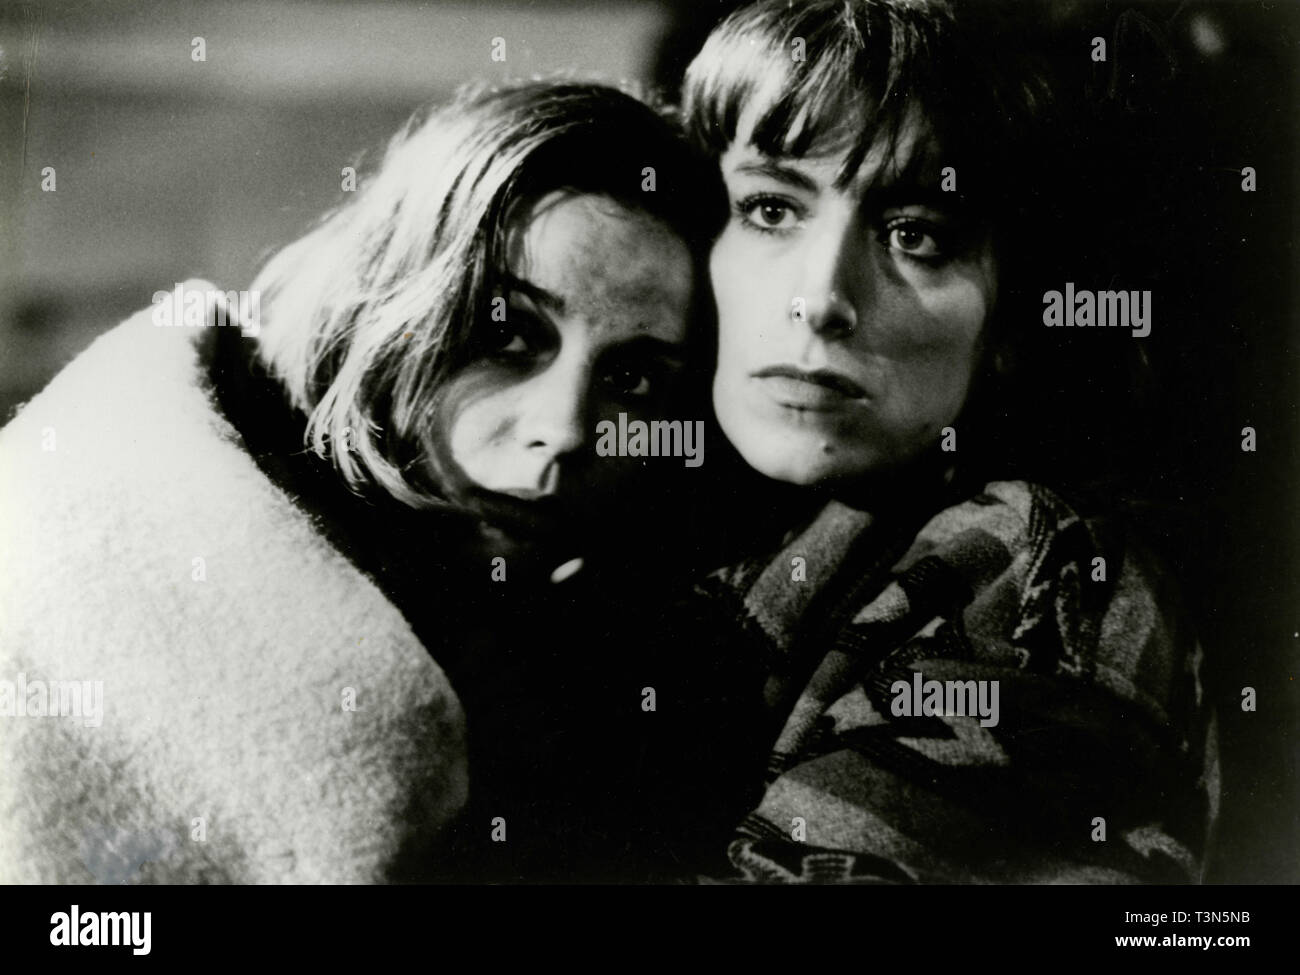 Fay Ripley and Marina Zudina in the movie Mute Witness, 1995 Stock Photo